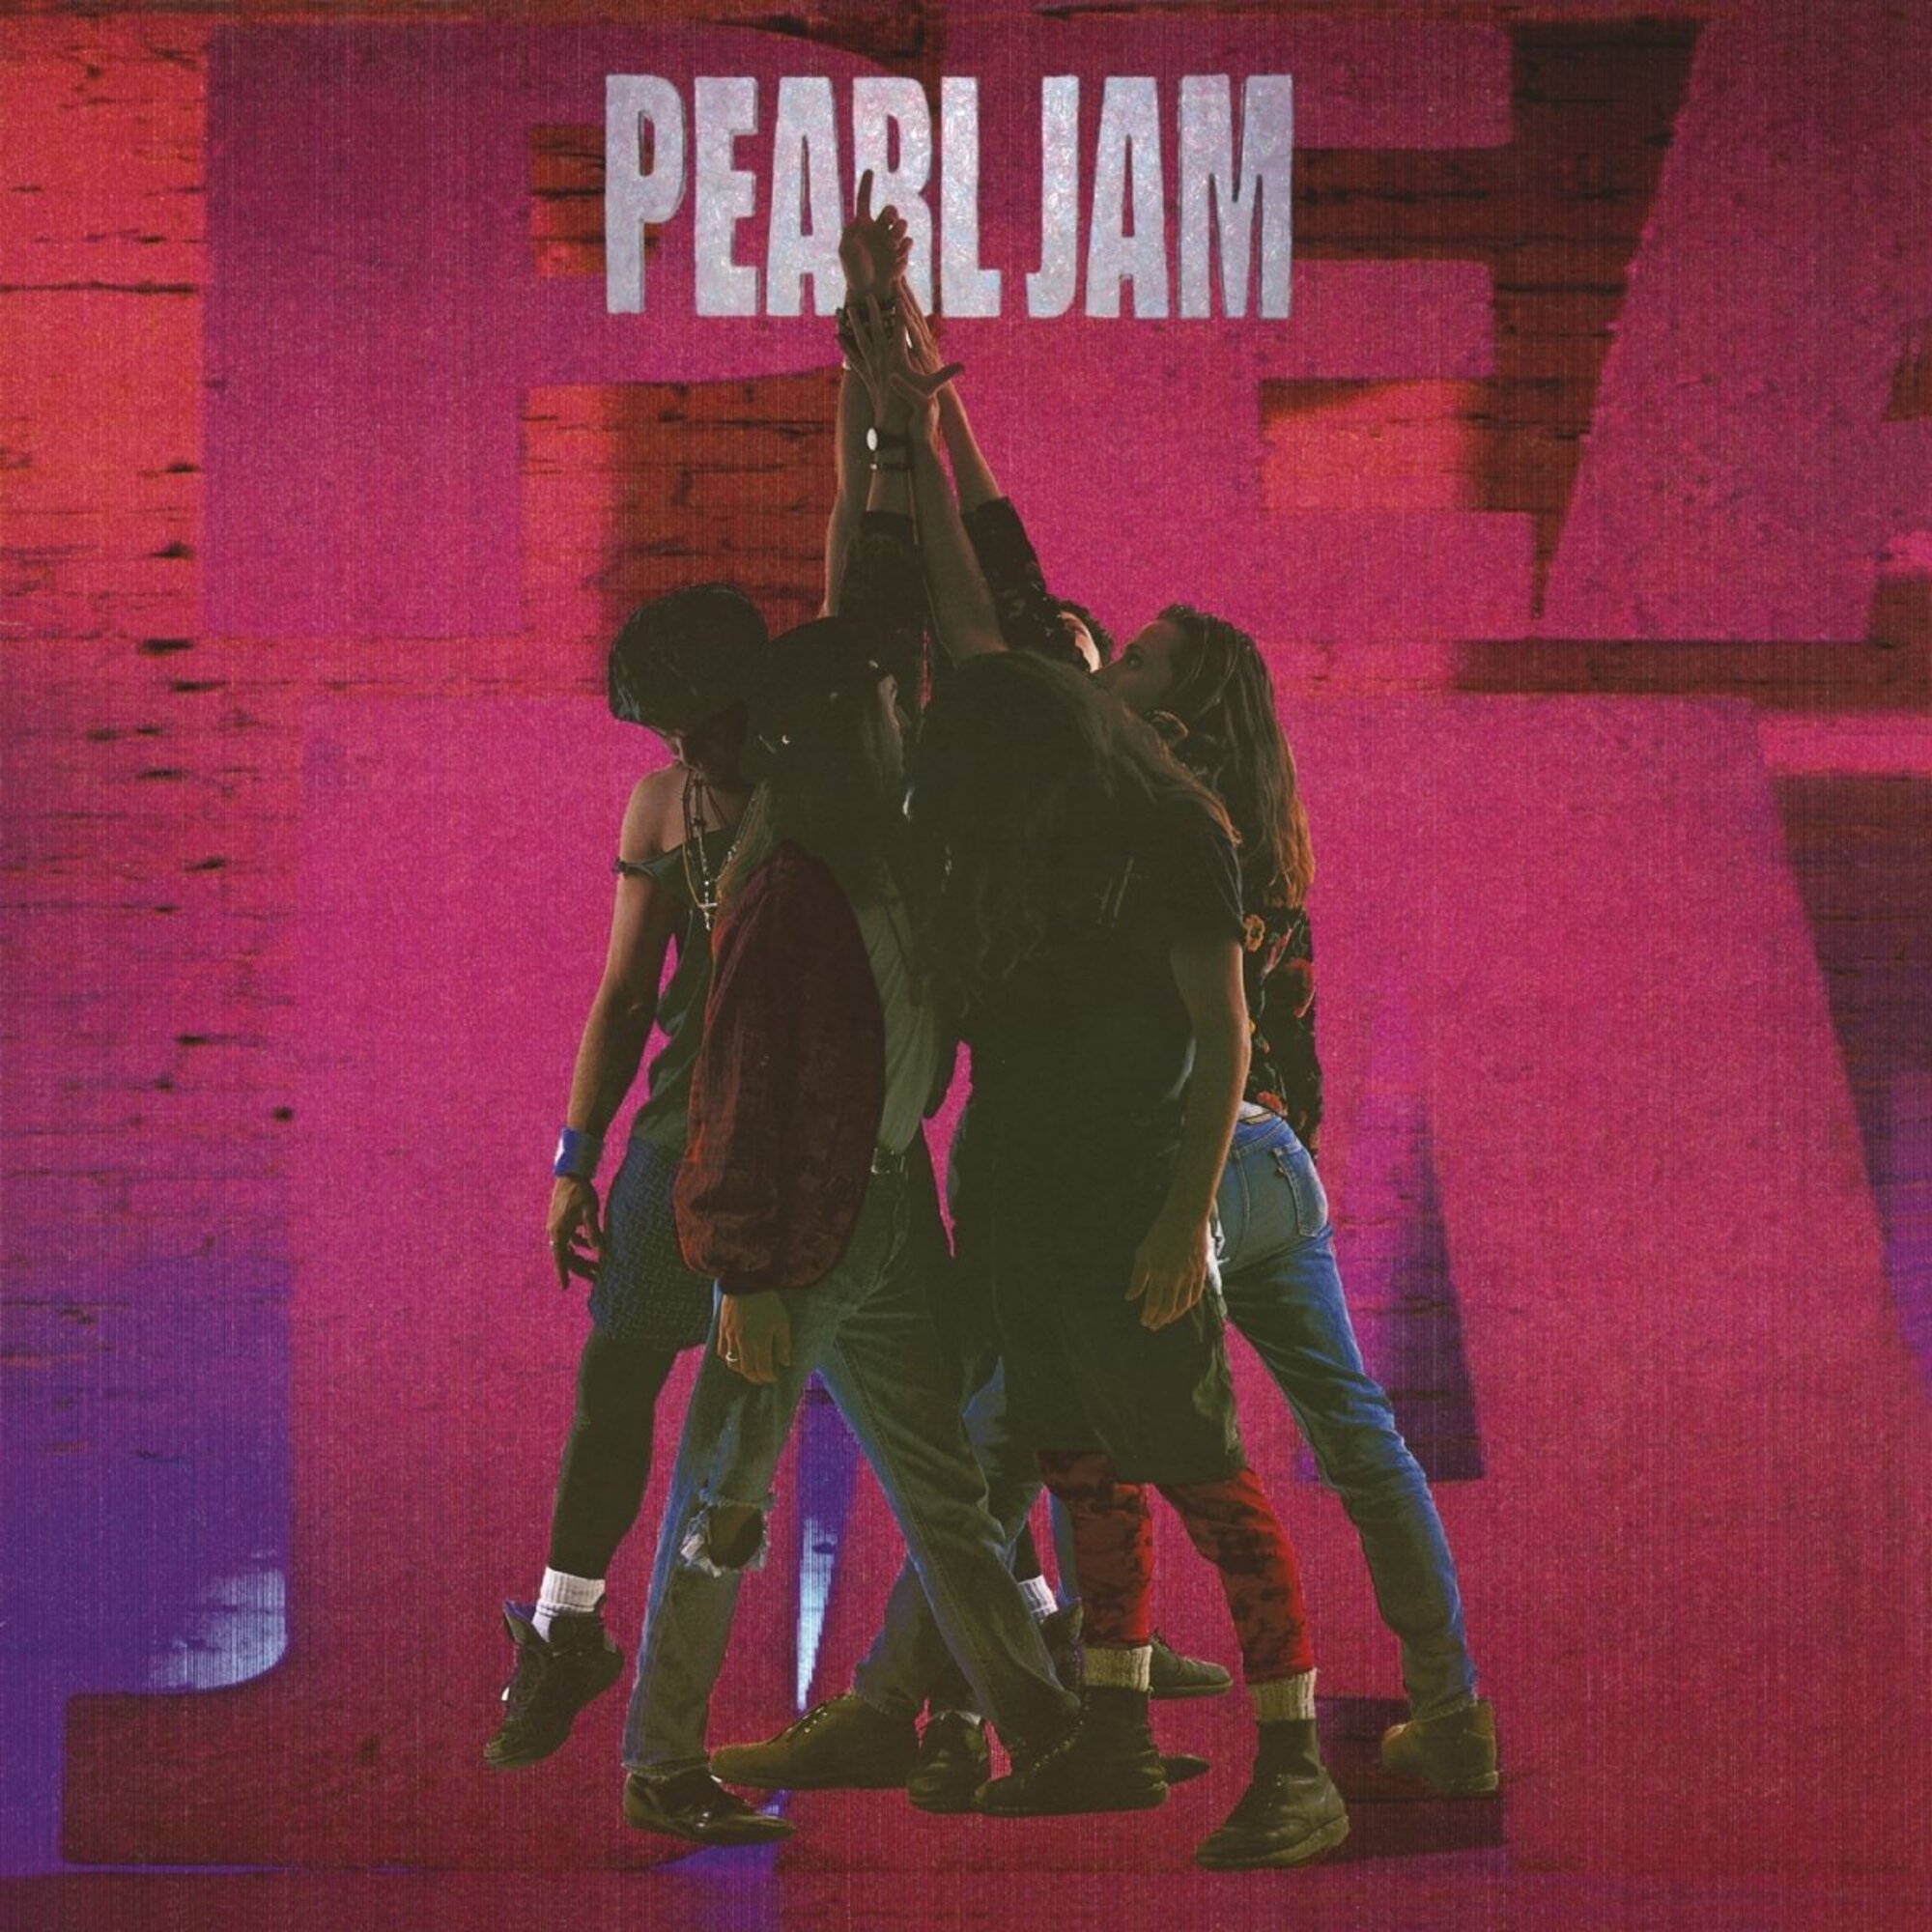 <p>Tracks als 'Alive', 'Even Flow' en 'Jeremy' zorgden ervoor dat Pearl Jam kort na de release bekendheid en relevantie verwierf. Nirvana maakte de weg vrij voor grunge om een trend te worden, en Pearl Jam profiteerde ervan om de wereld te laten zien waar ze goed in waren. De hoes, zoals gitarist Jeff Ament aan Rolling Stone vertelde, probeerde de saamhorigheid van de band te laten zien in hun streven naar succes. Een "soort van één voor allen en allen voor één."</p>